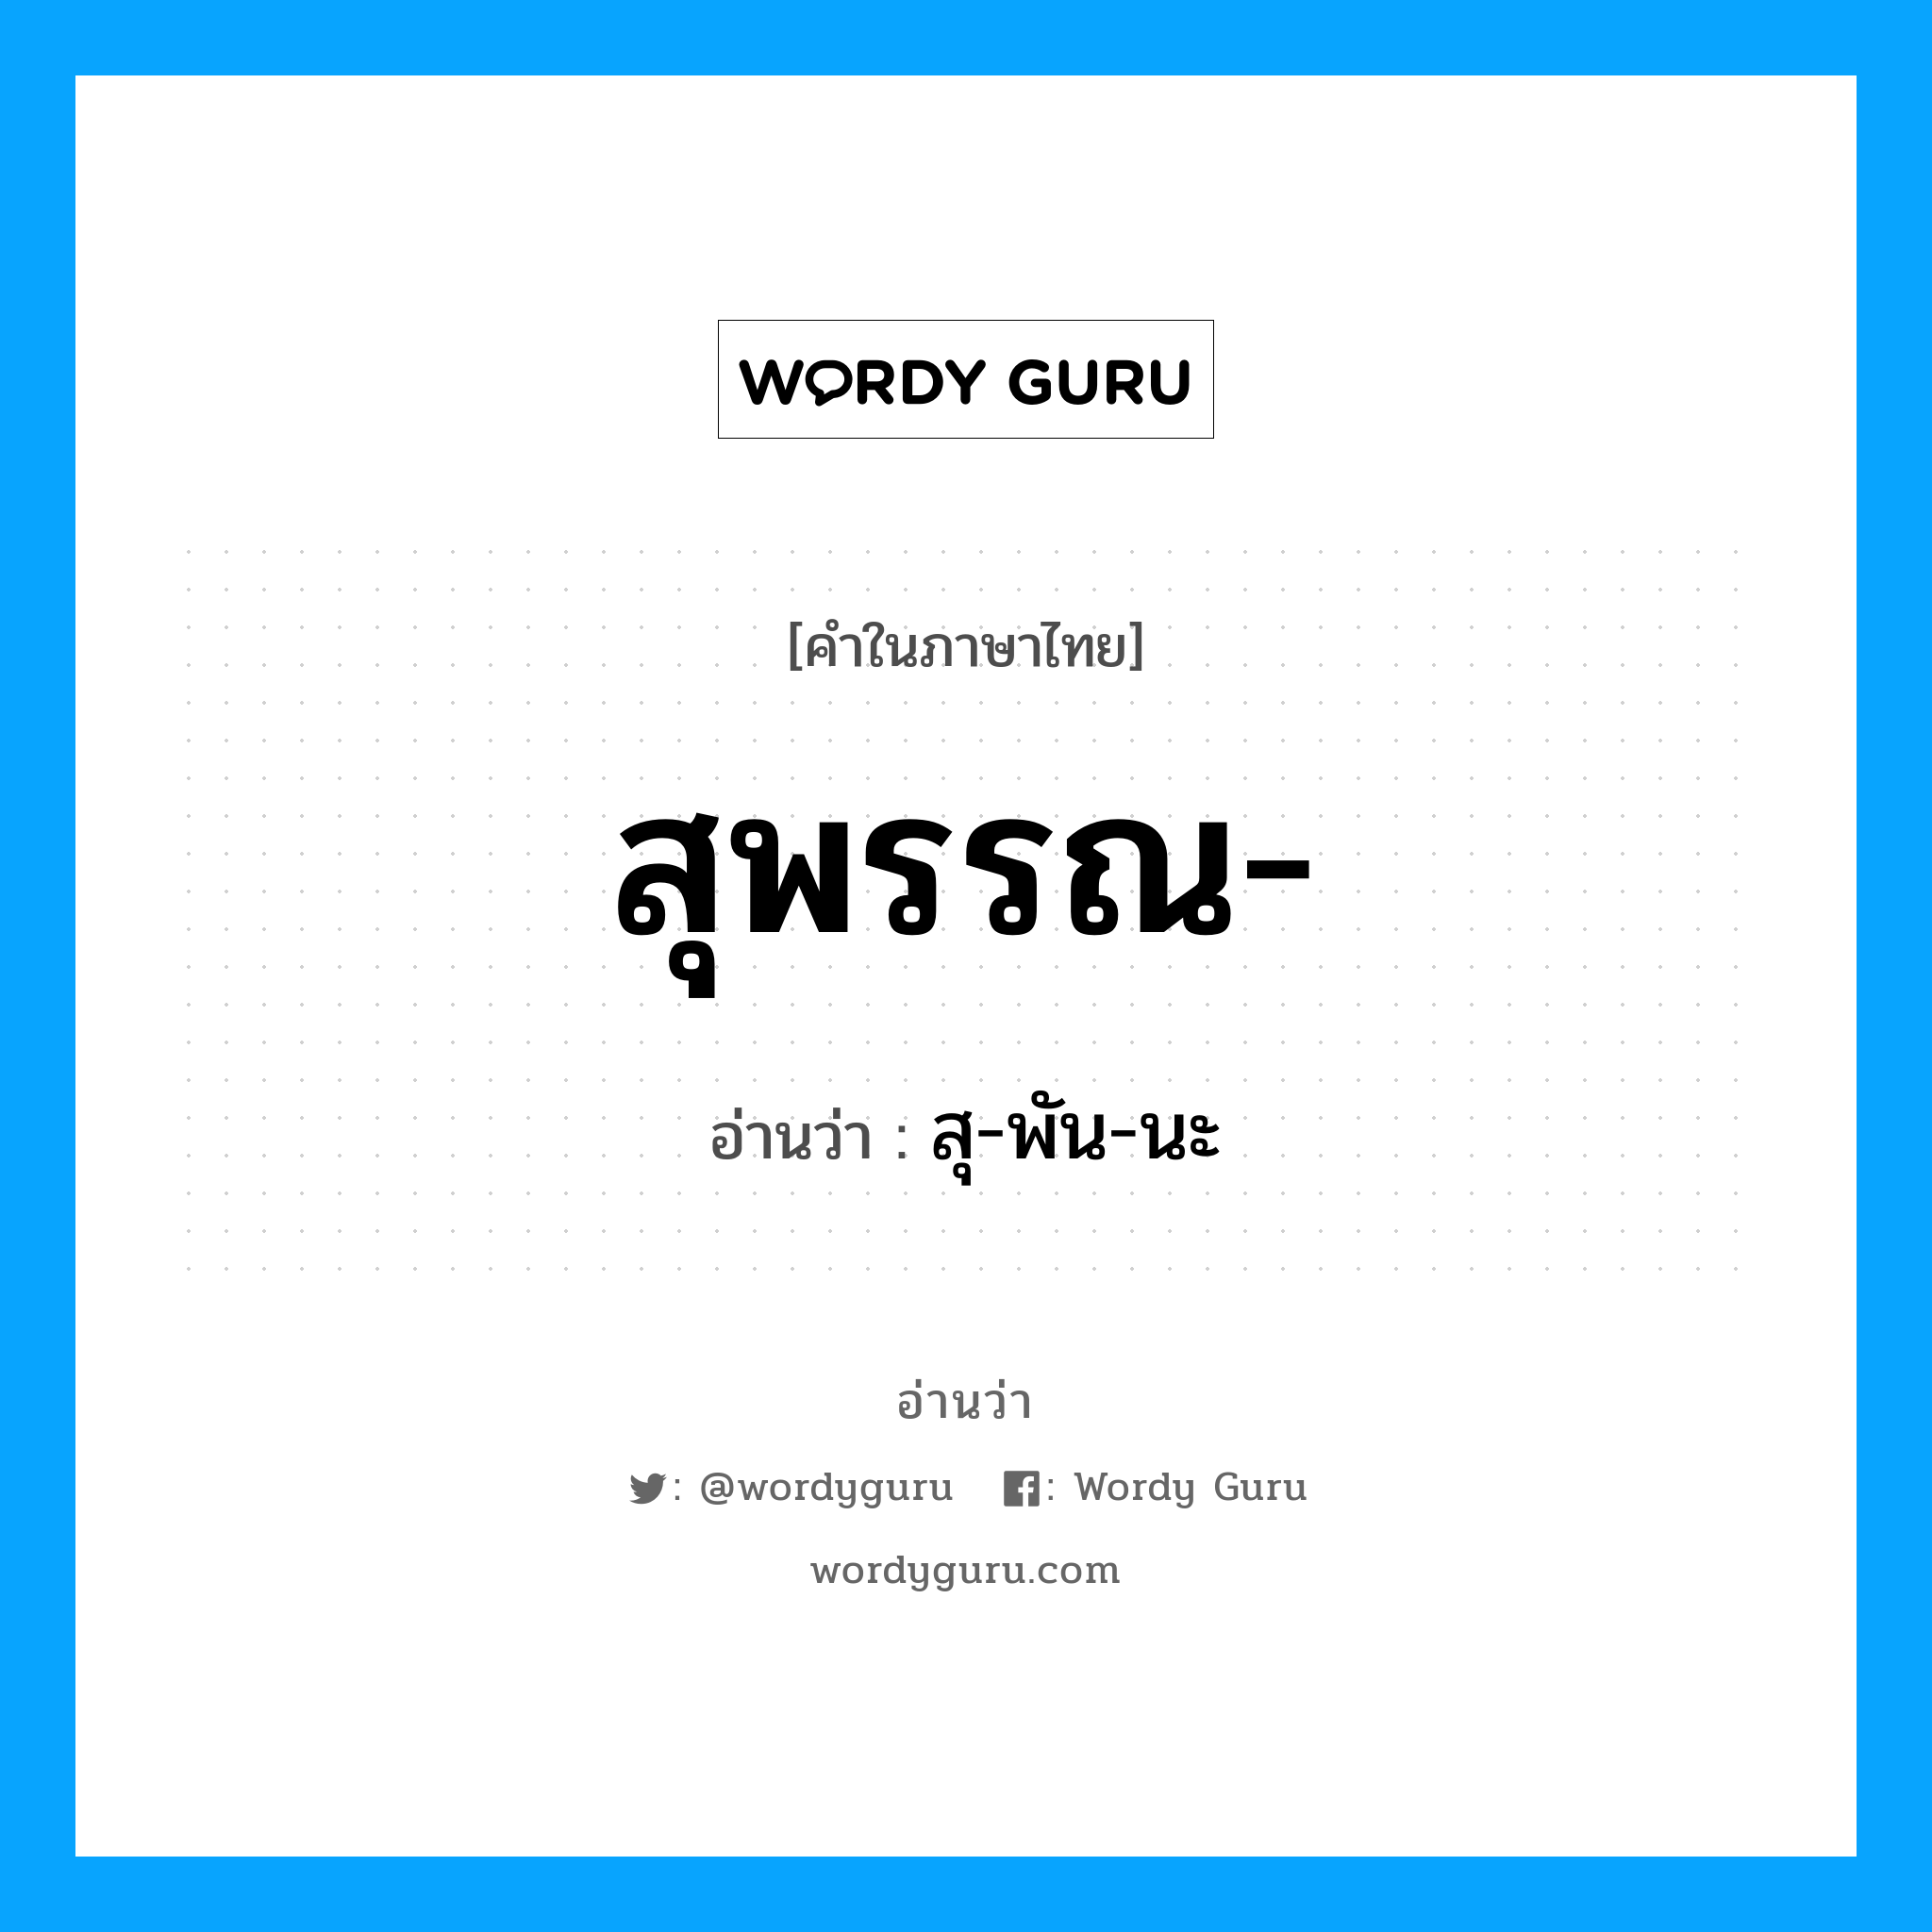 สุ-พัน-นะ เป็นคำอ่านของคำไหน?, คำในภาษาไทย สุ-พัน-นะ อ่านว่า สุพรรณ-